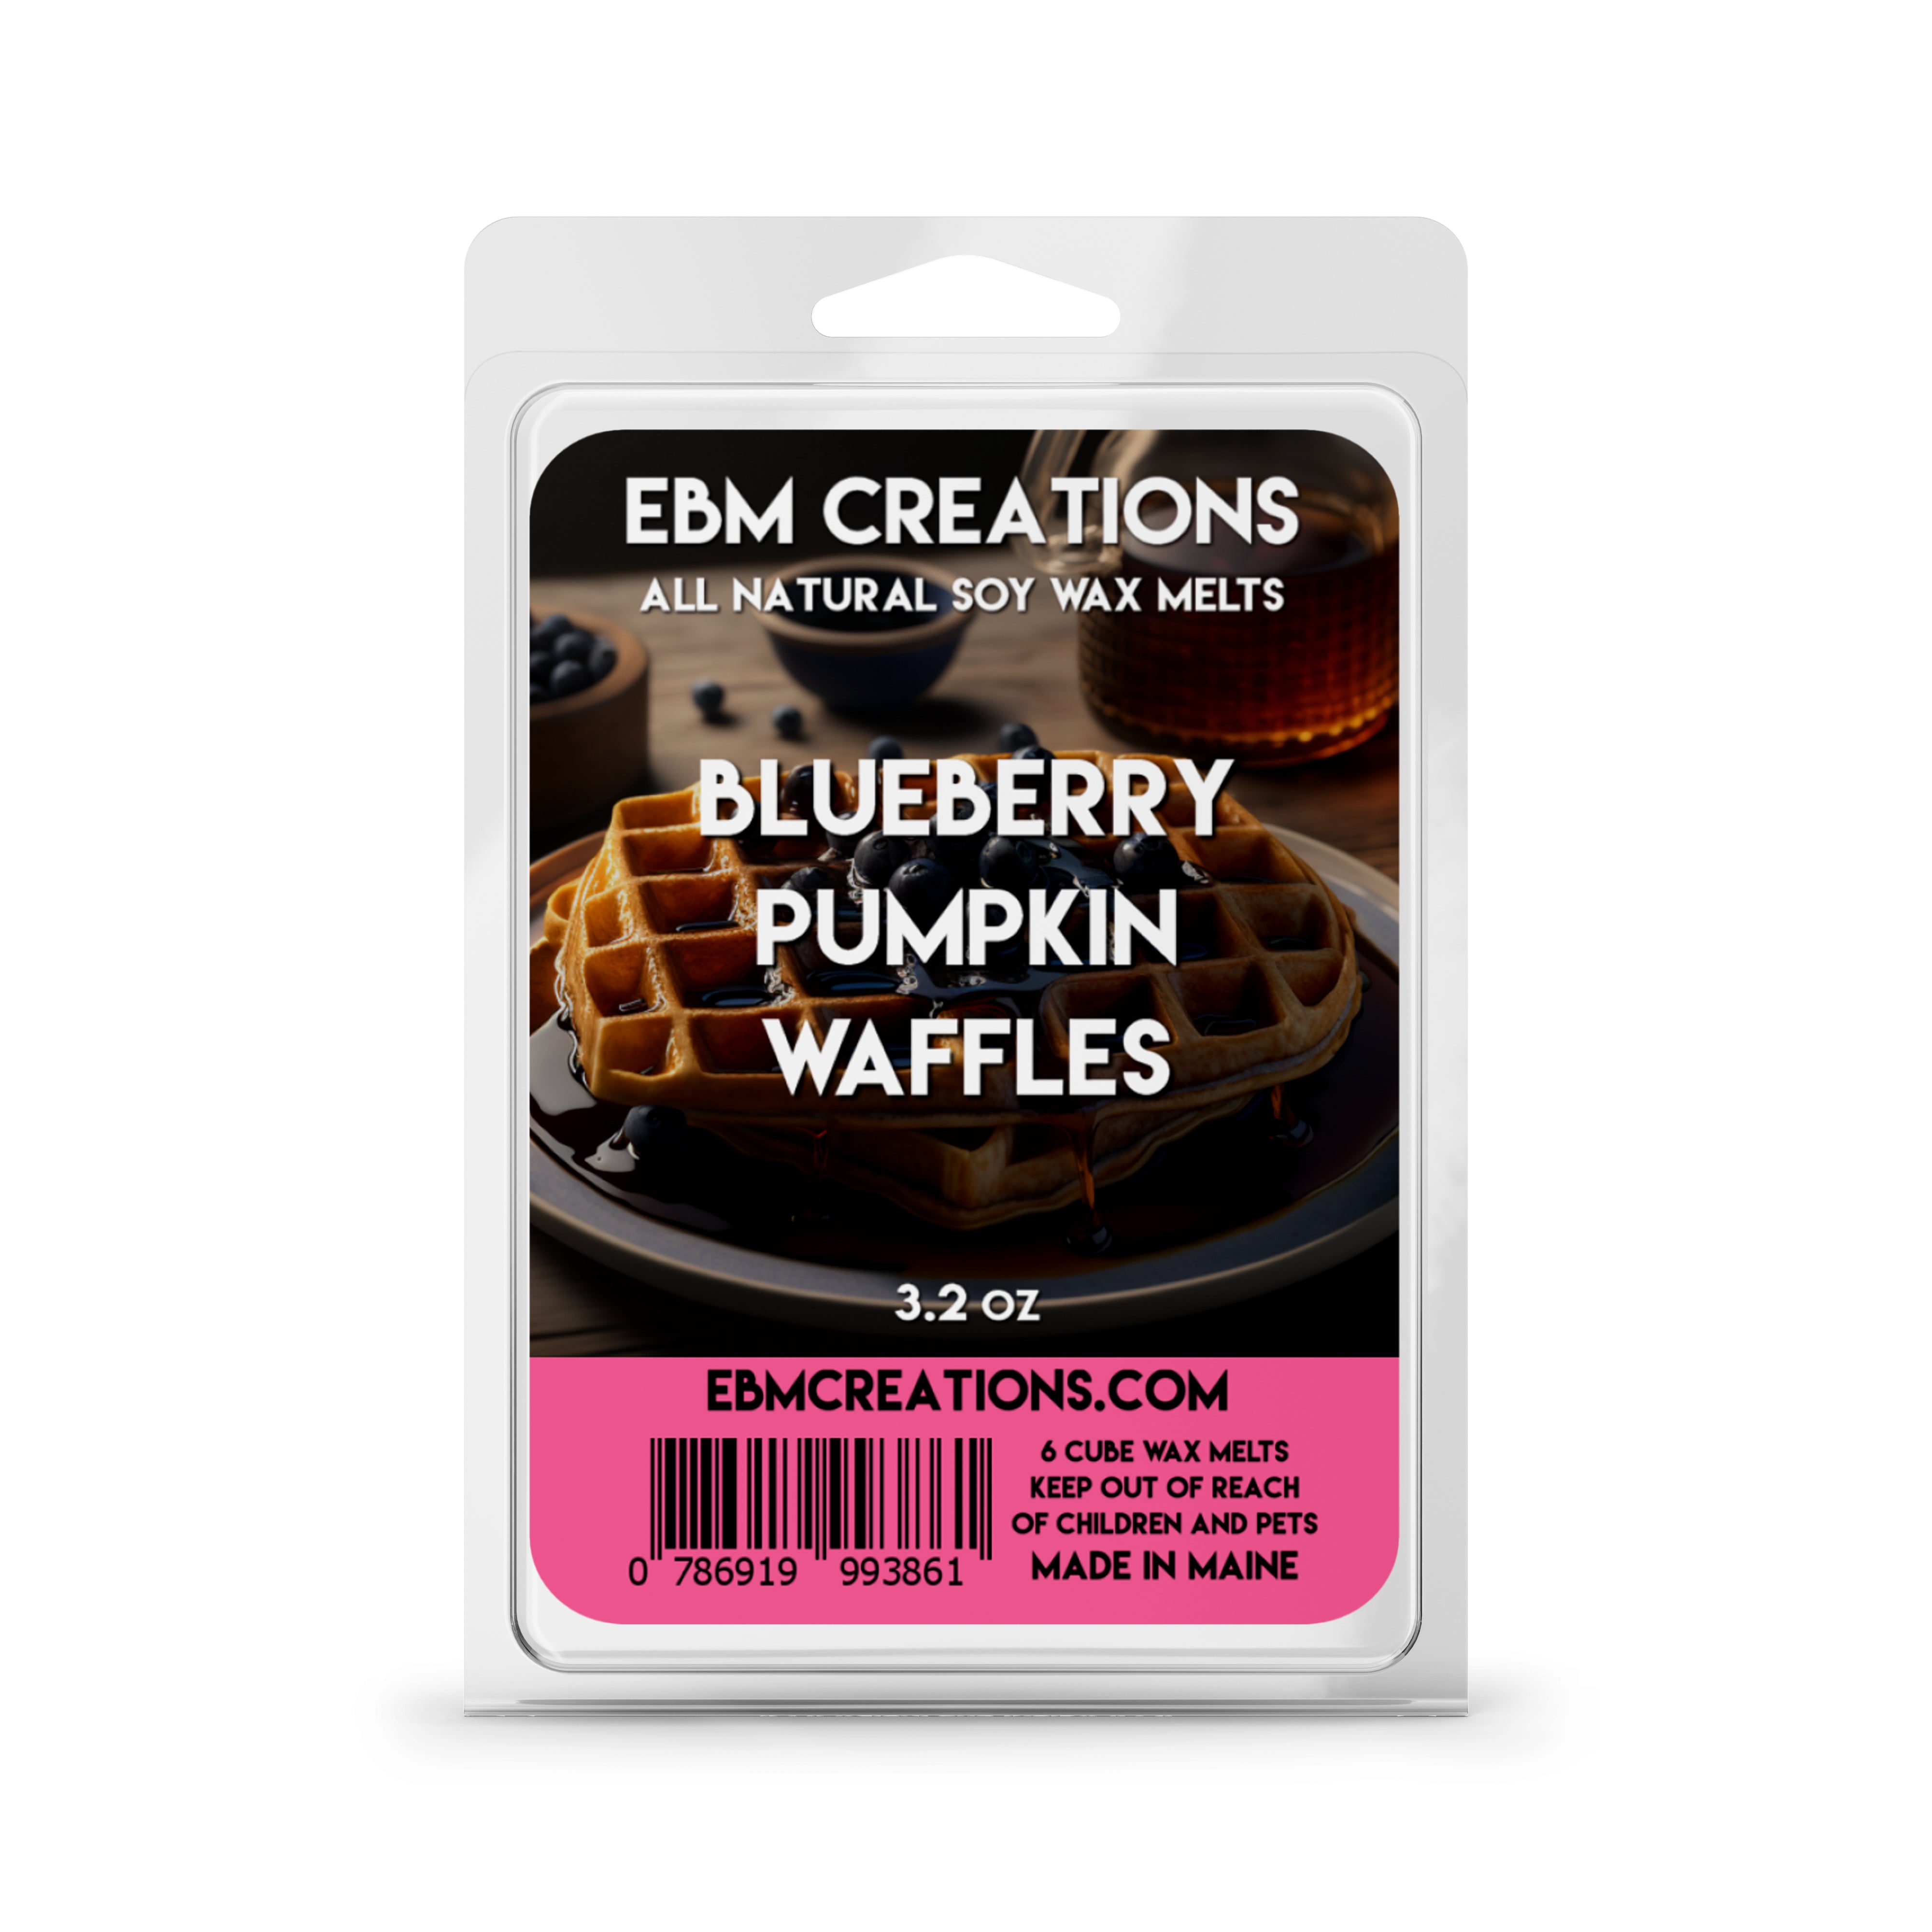 Blueberry Pumpkin Waffles - 3.2 oz Clamshell